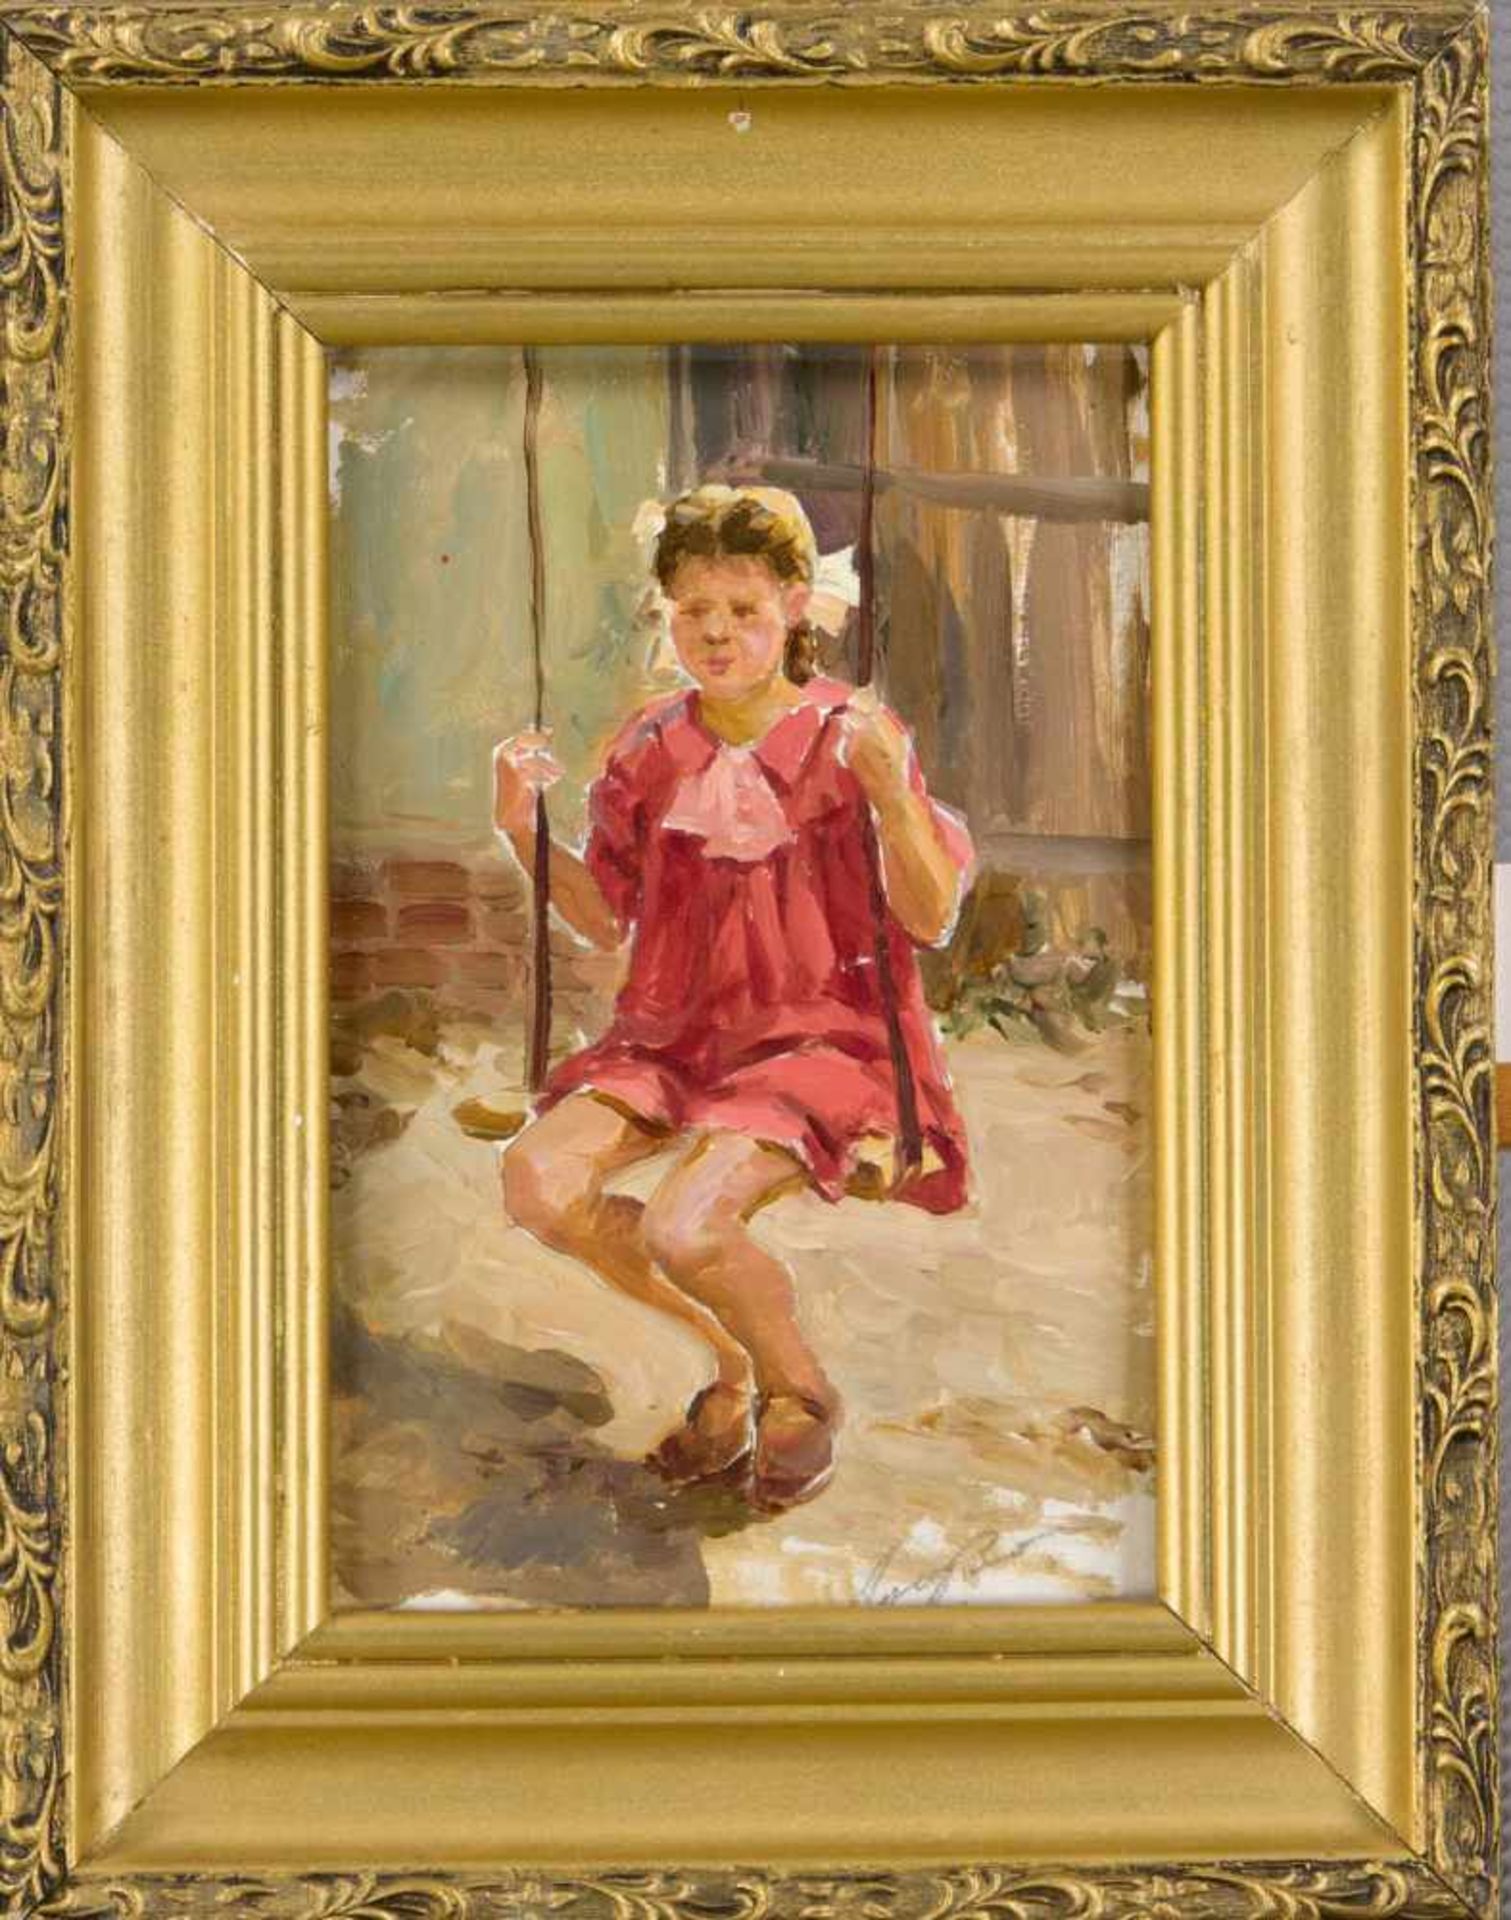 Anonymer, russischer Maler 2. H. 20. Jh., junges Mädchen in rotem Kleid auf einerSchaukel, Öl auf